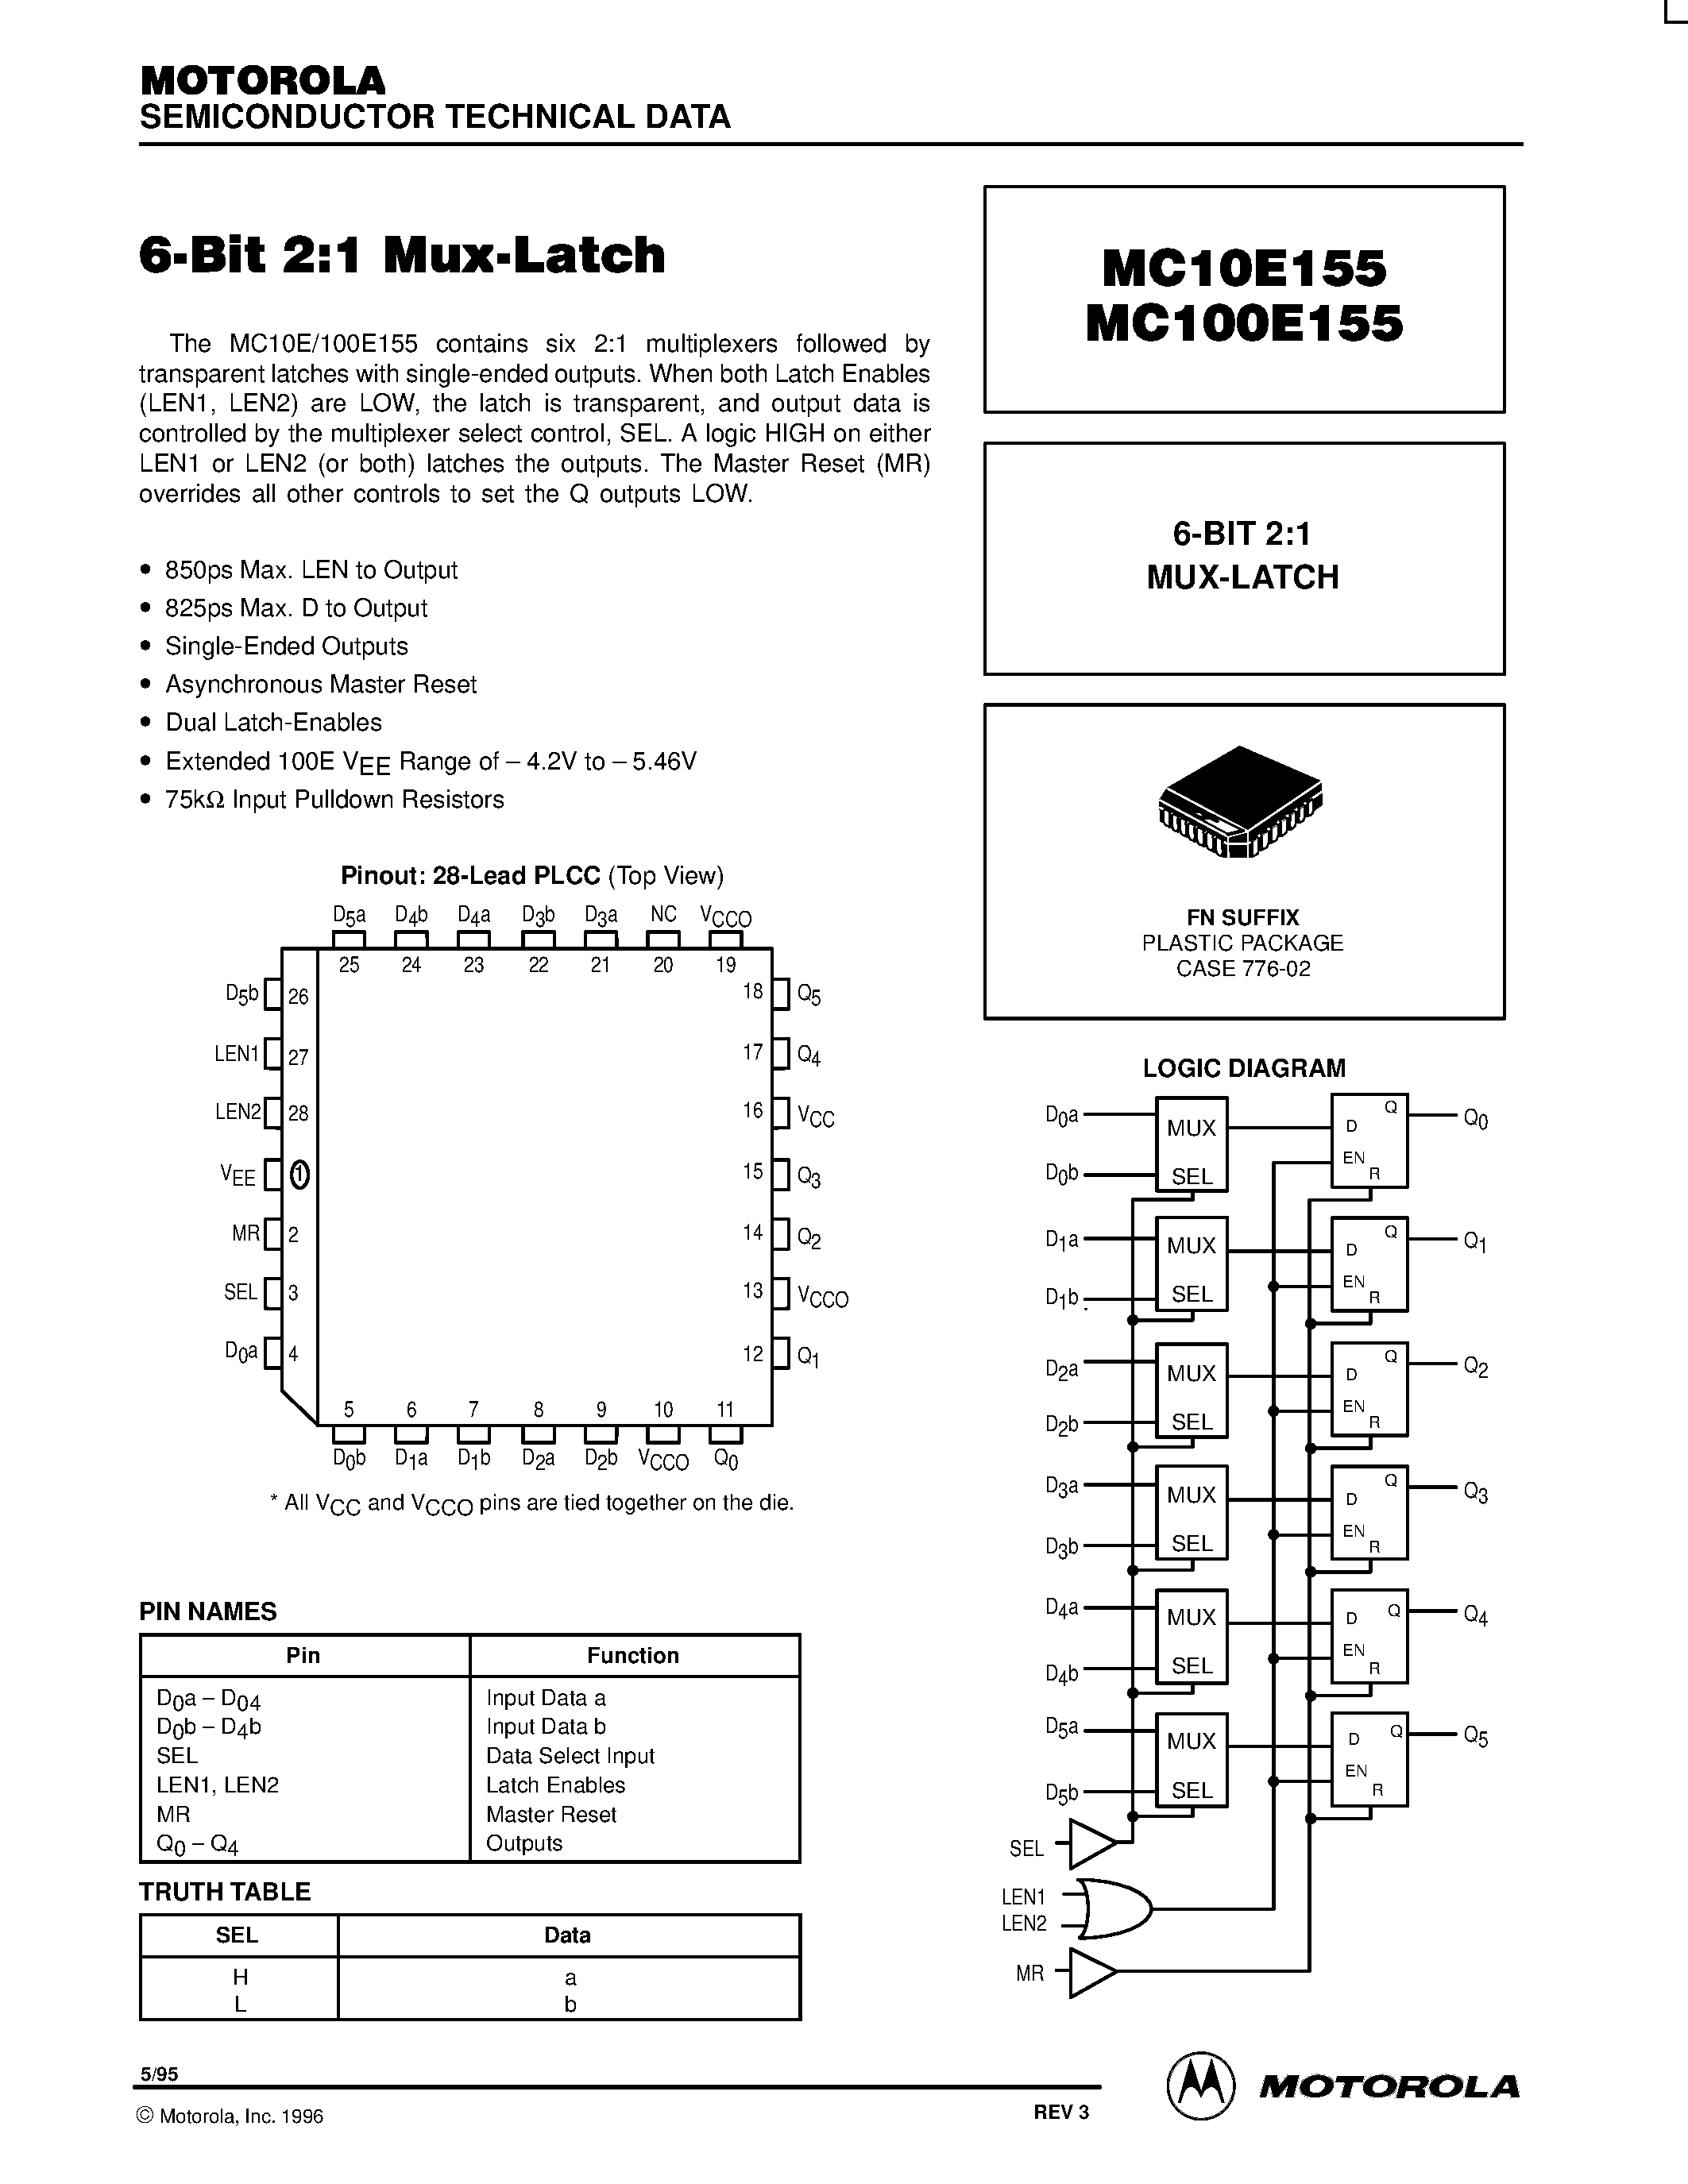 Datasheet MC100E155FN - 6-BIT 2:1 MUX-LATCH page 1